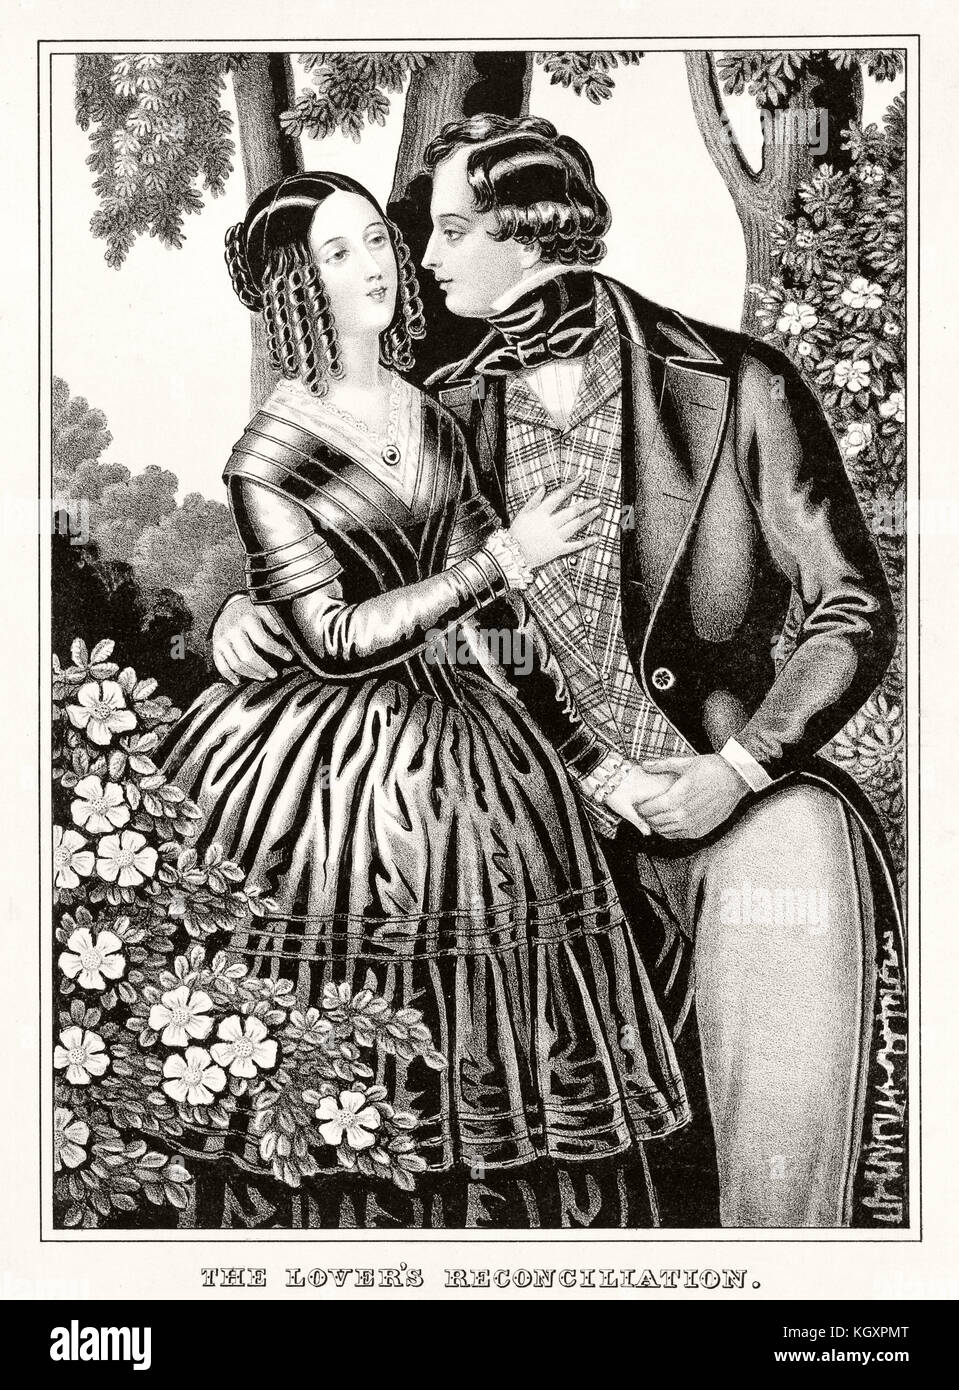 Ilustración antigua representando la reconciliación entre el hombre y la mujer en el amor. Publ. 1846 Foto de stock